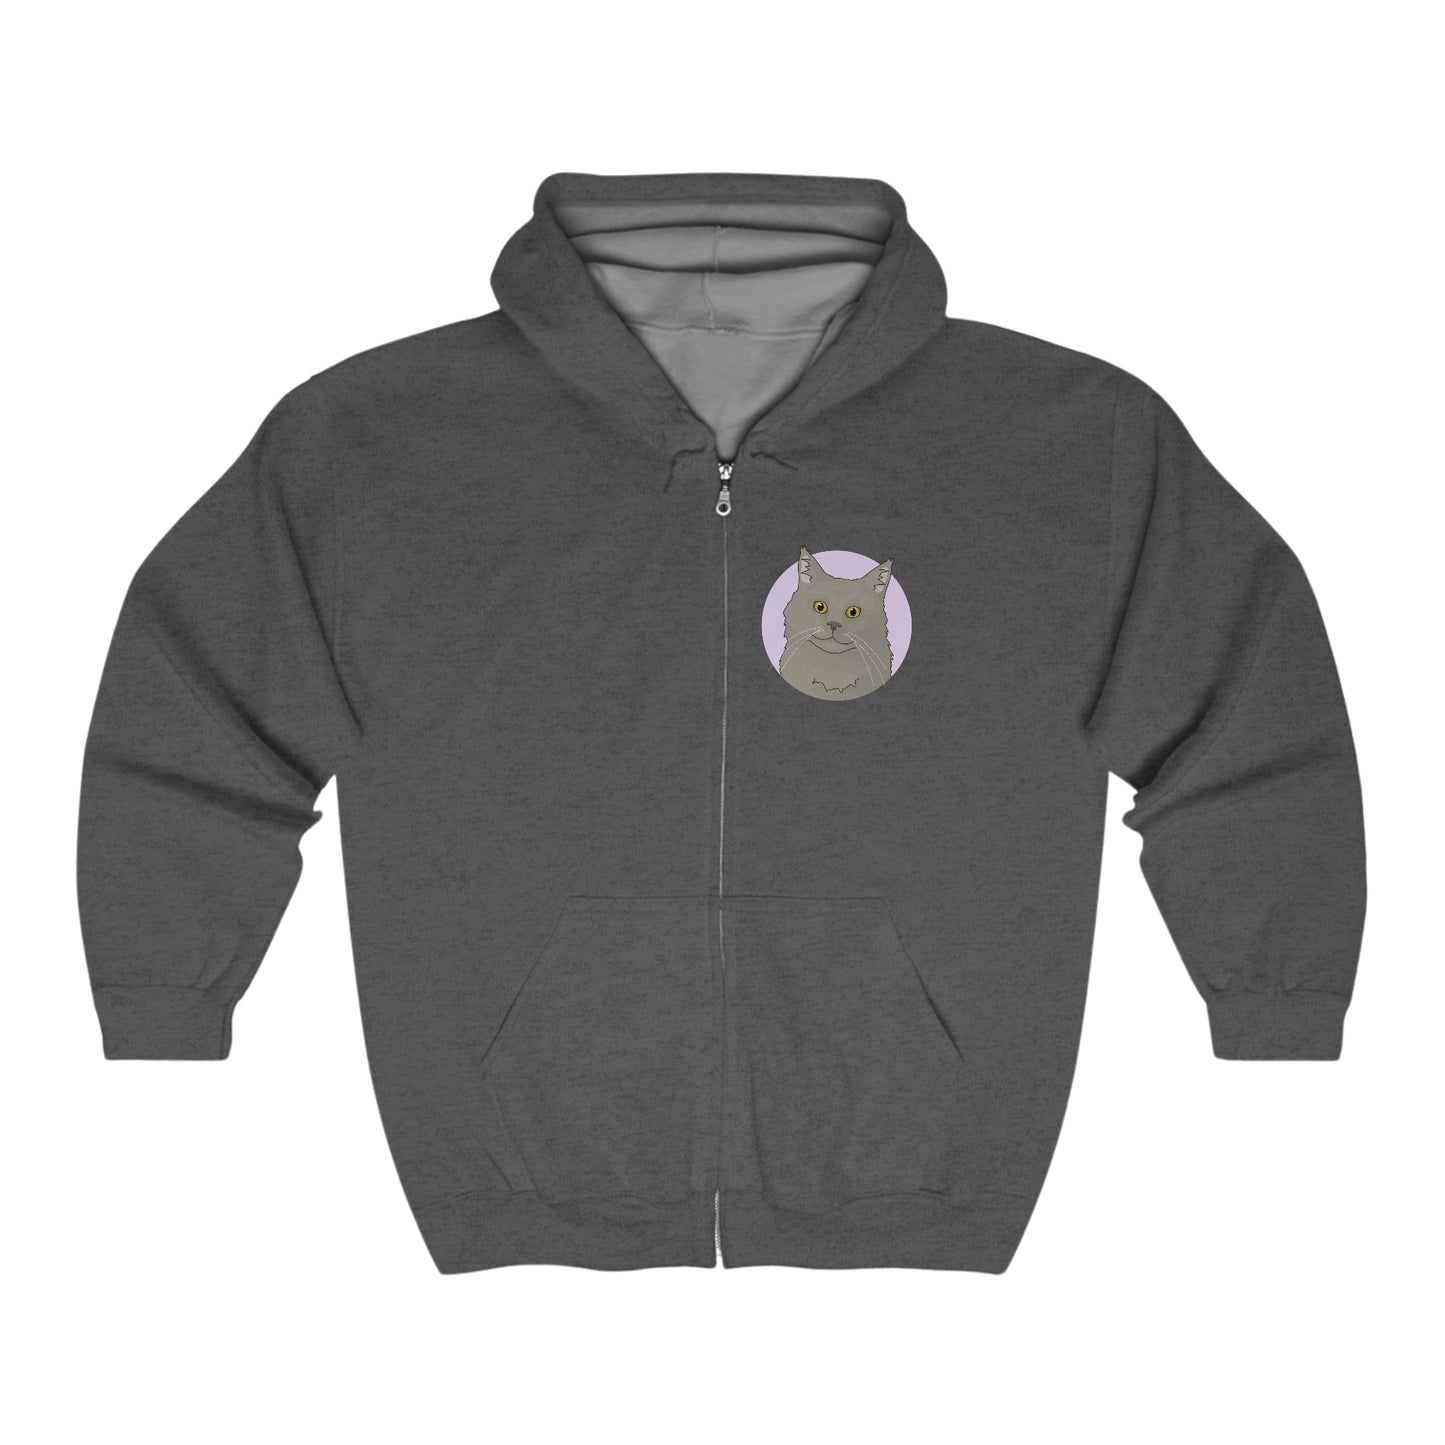 Maine Coon | Zip-up Sweatshirt - Detezi Designs-11945388422621986454